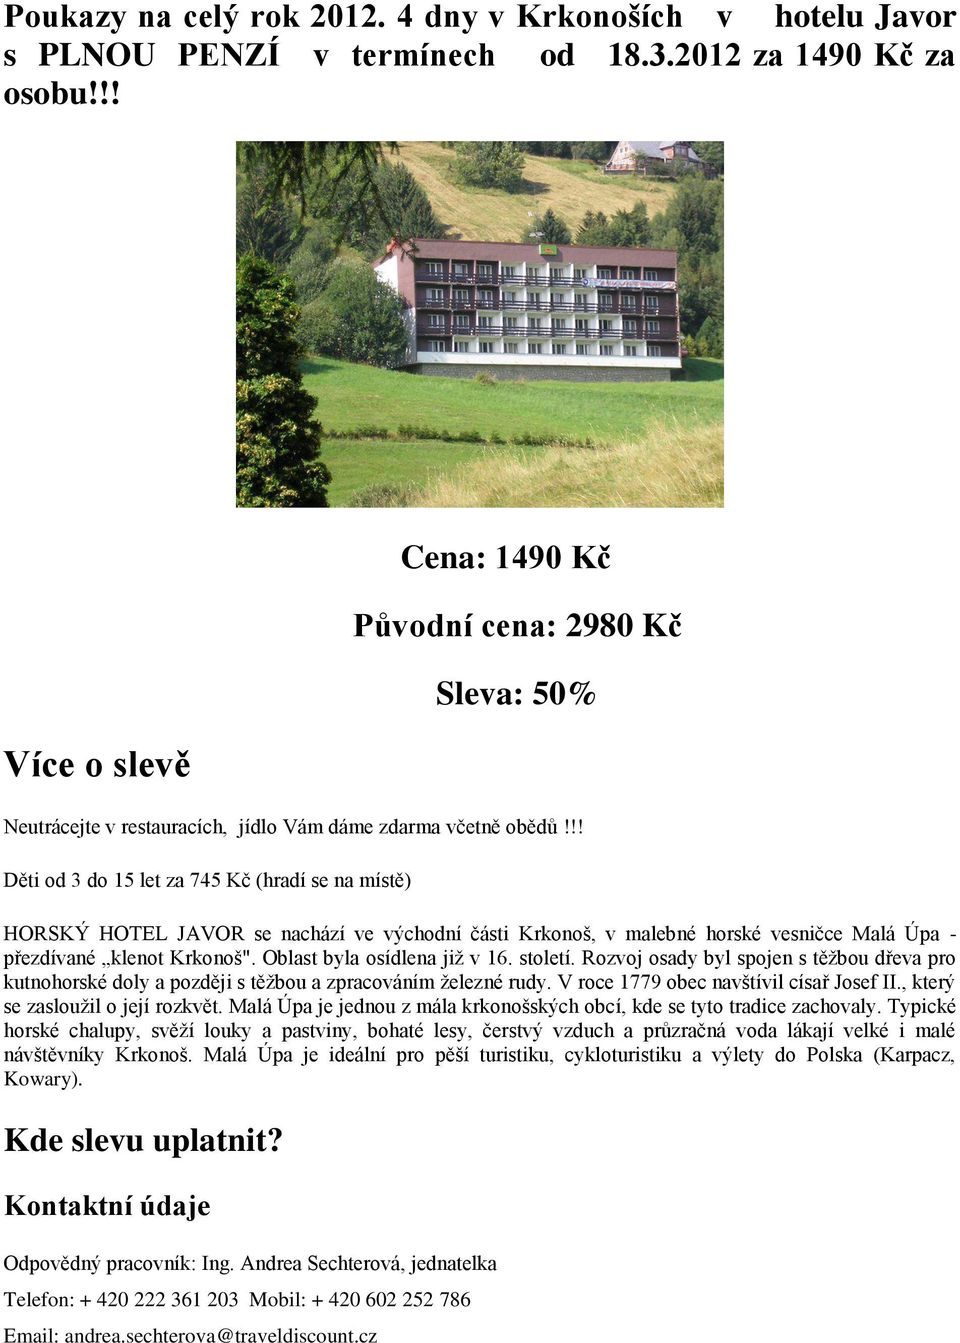 !! Děti od 3 do 15 let za 745 Kč (hradí se na místě) HORSKÝ HOTEL JAVOR se nachází ve východní části Krkonoš, v malebné horské vesničce Malá Úpa - přezdívané klenot Krkonoš".